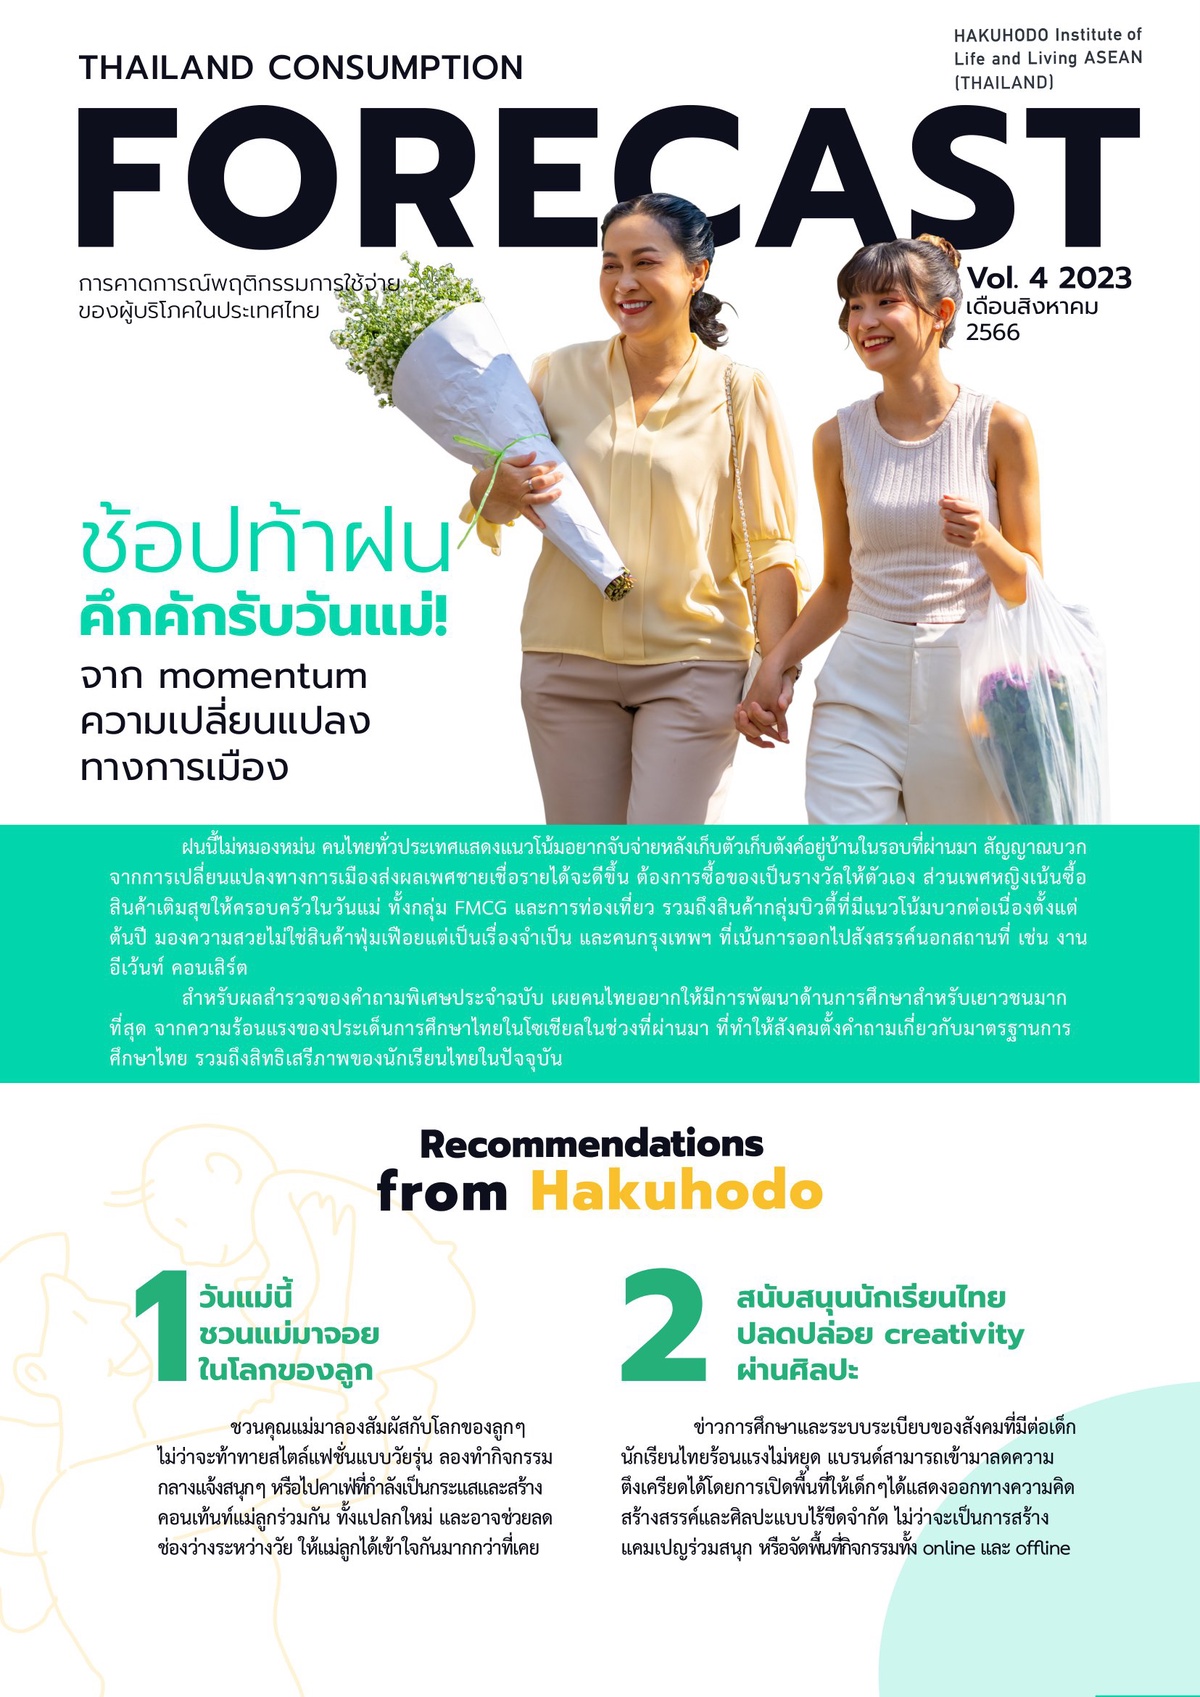 'ฮาคูโฮโด' เผย โมเมนตัมเปลี่ยน คนไทยพร้อมช้อปท้าฝน เทศกาลวันแม่หนุนเศรษฐกิจกลับมาคึกคัก